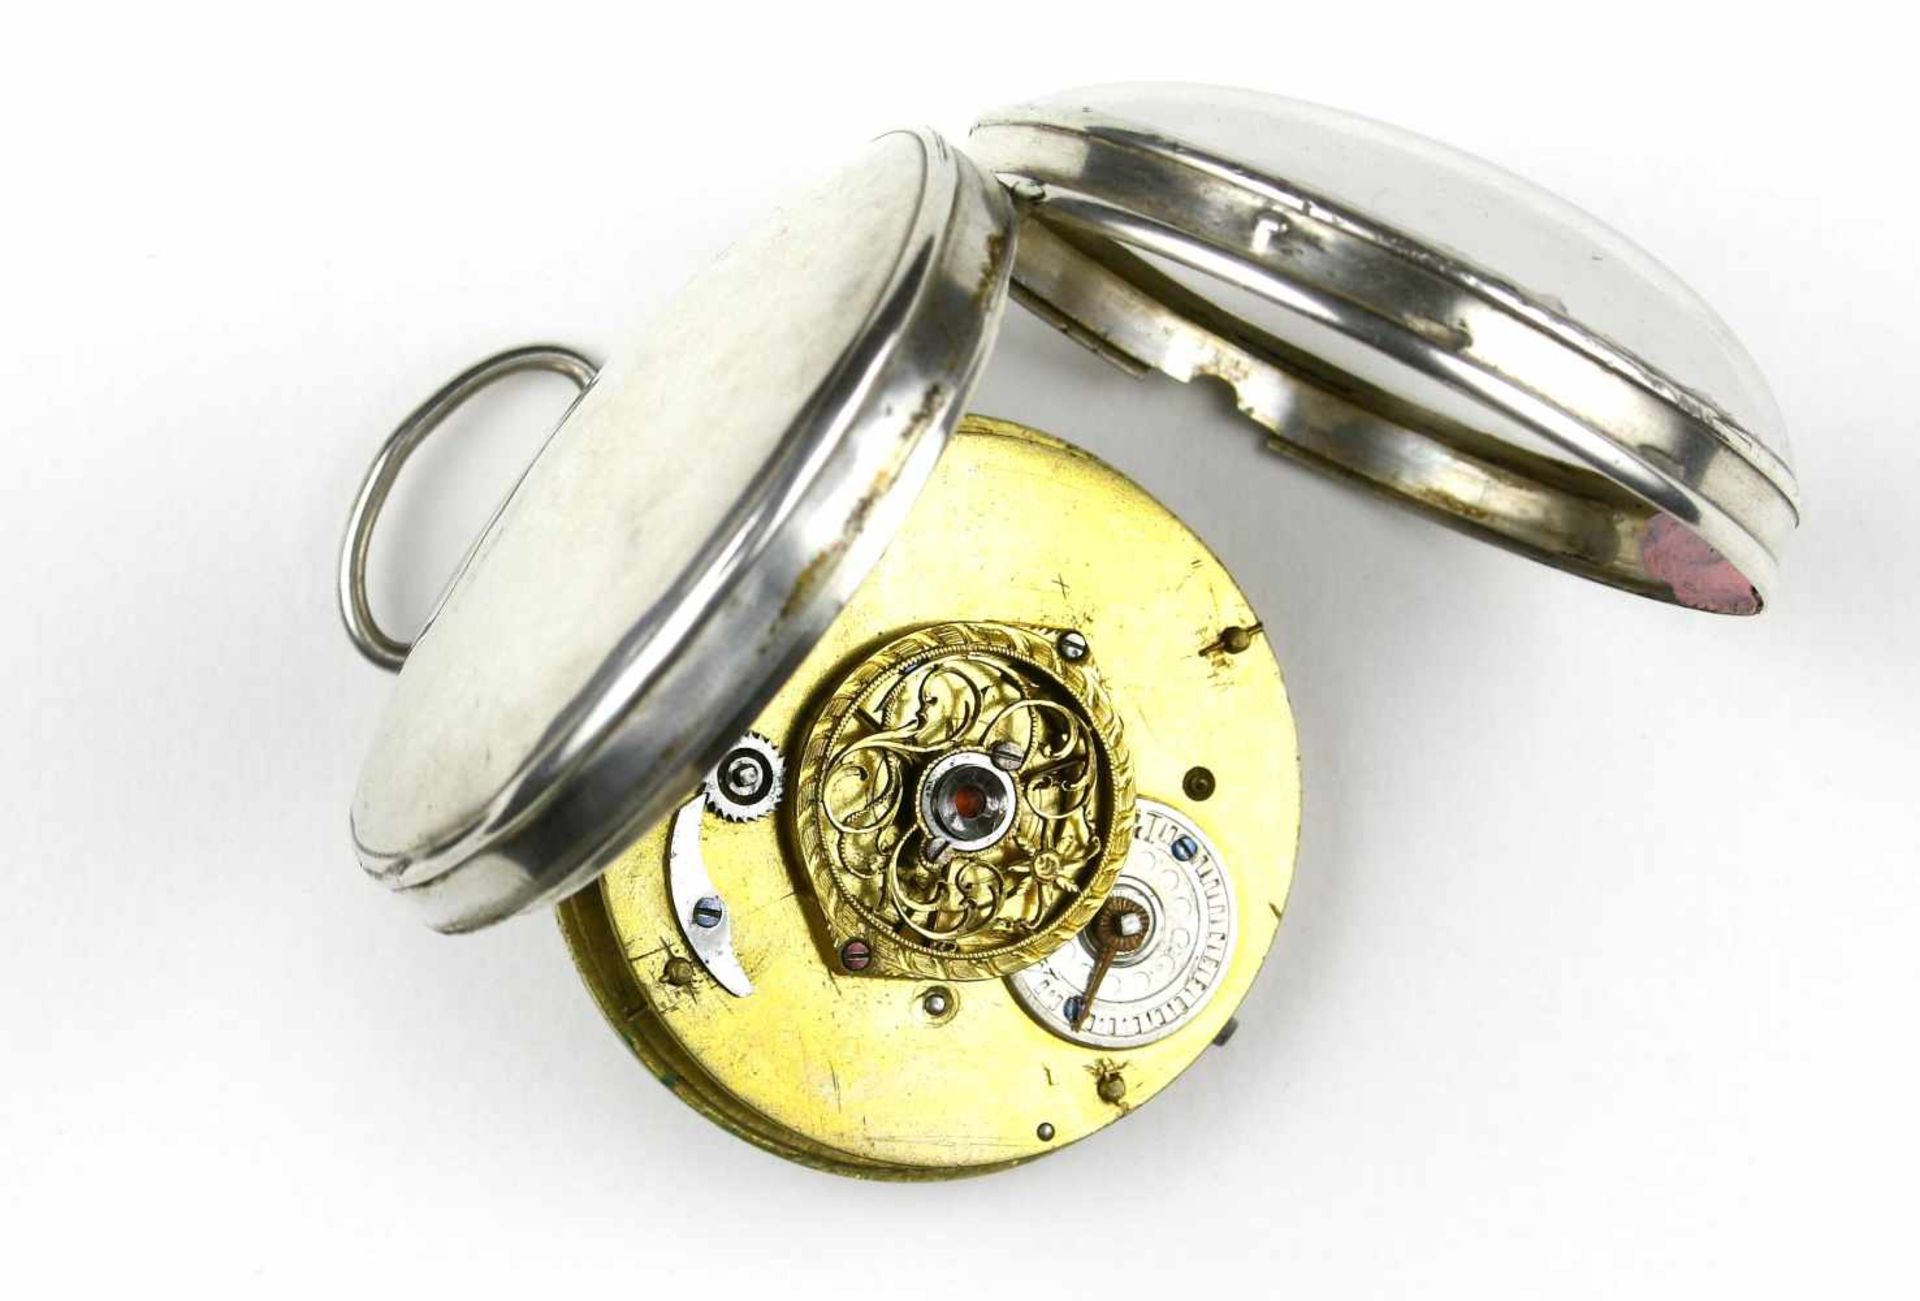 Uhr, Spindeltaschenuhr, Silber, Frankreich, um 1800 - Image 2 of 2